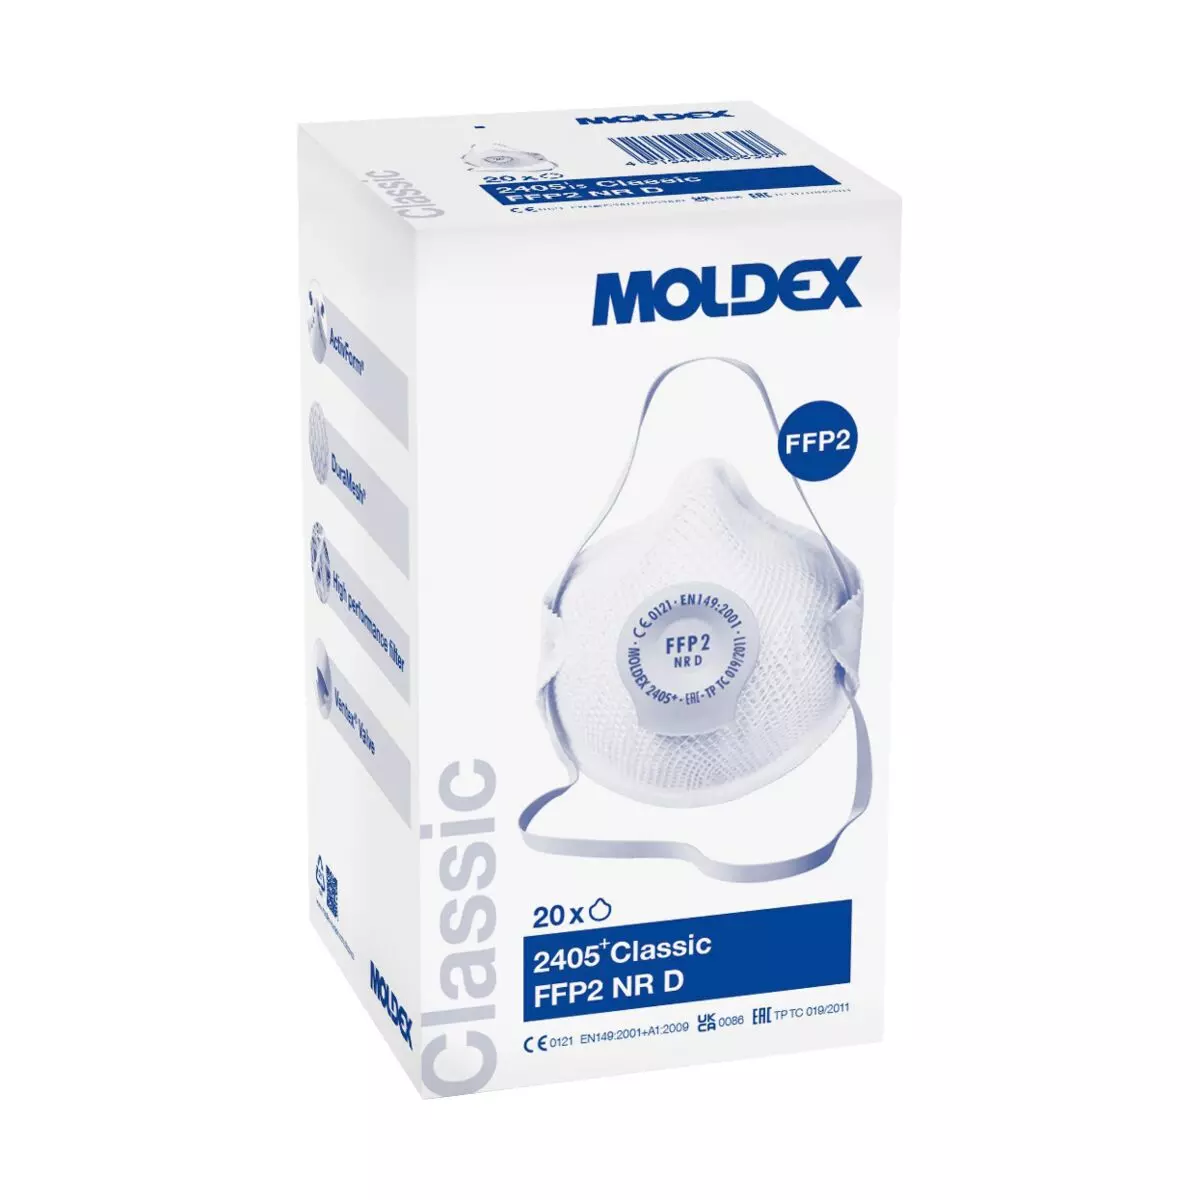 MOLDEX Atemschutzmasken, 20 Stk - FFP2